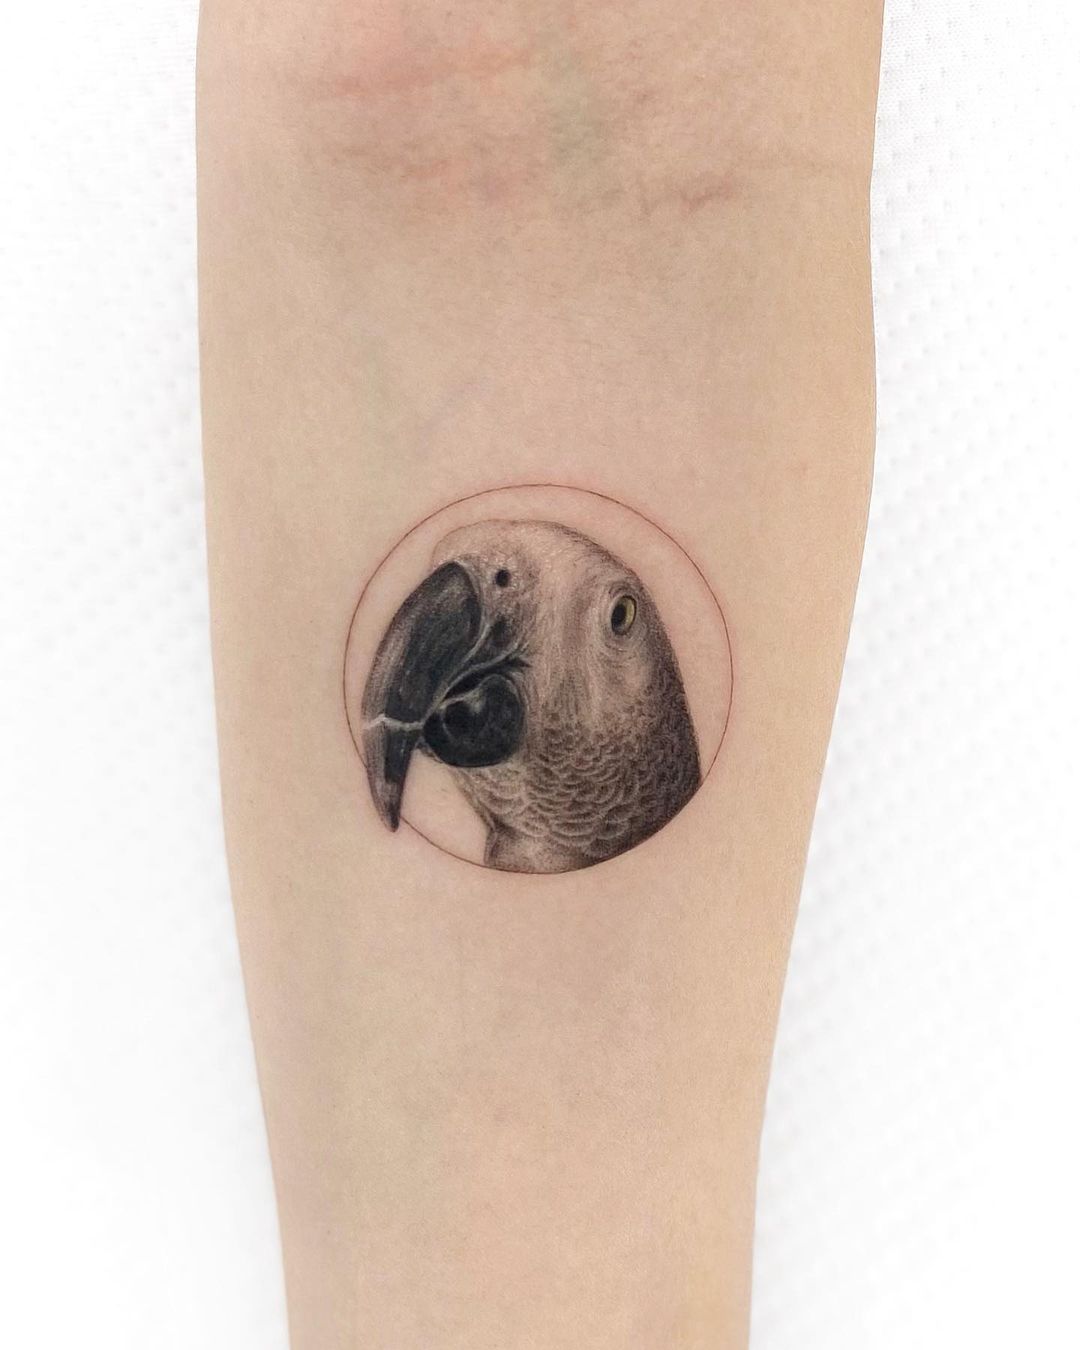 Parrot tattoo on arm by mustafaalakoc